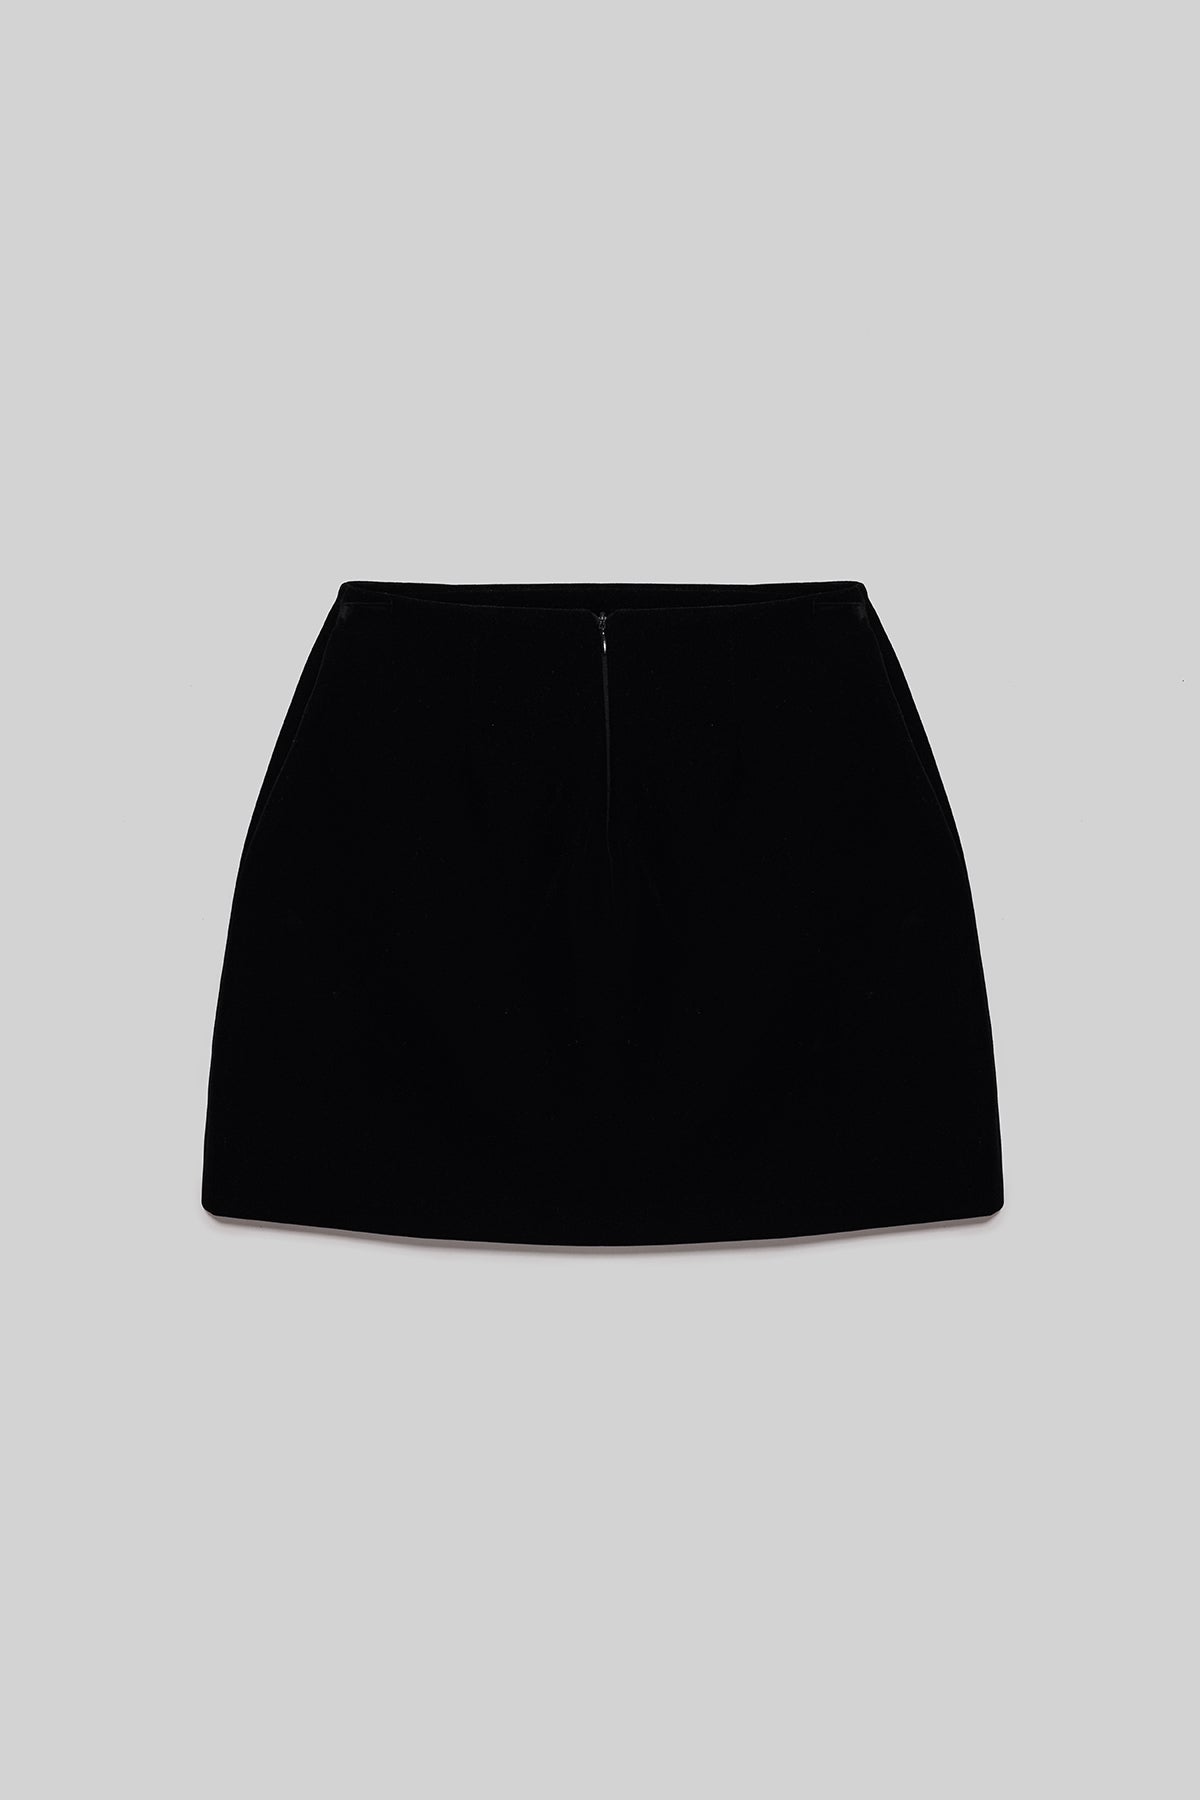 Black Velvet Skirt
